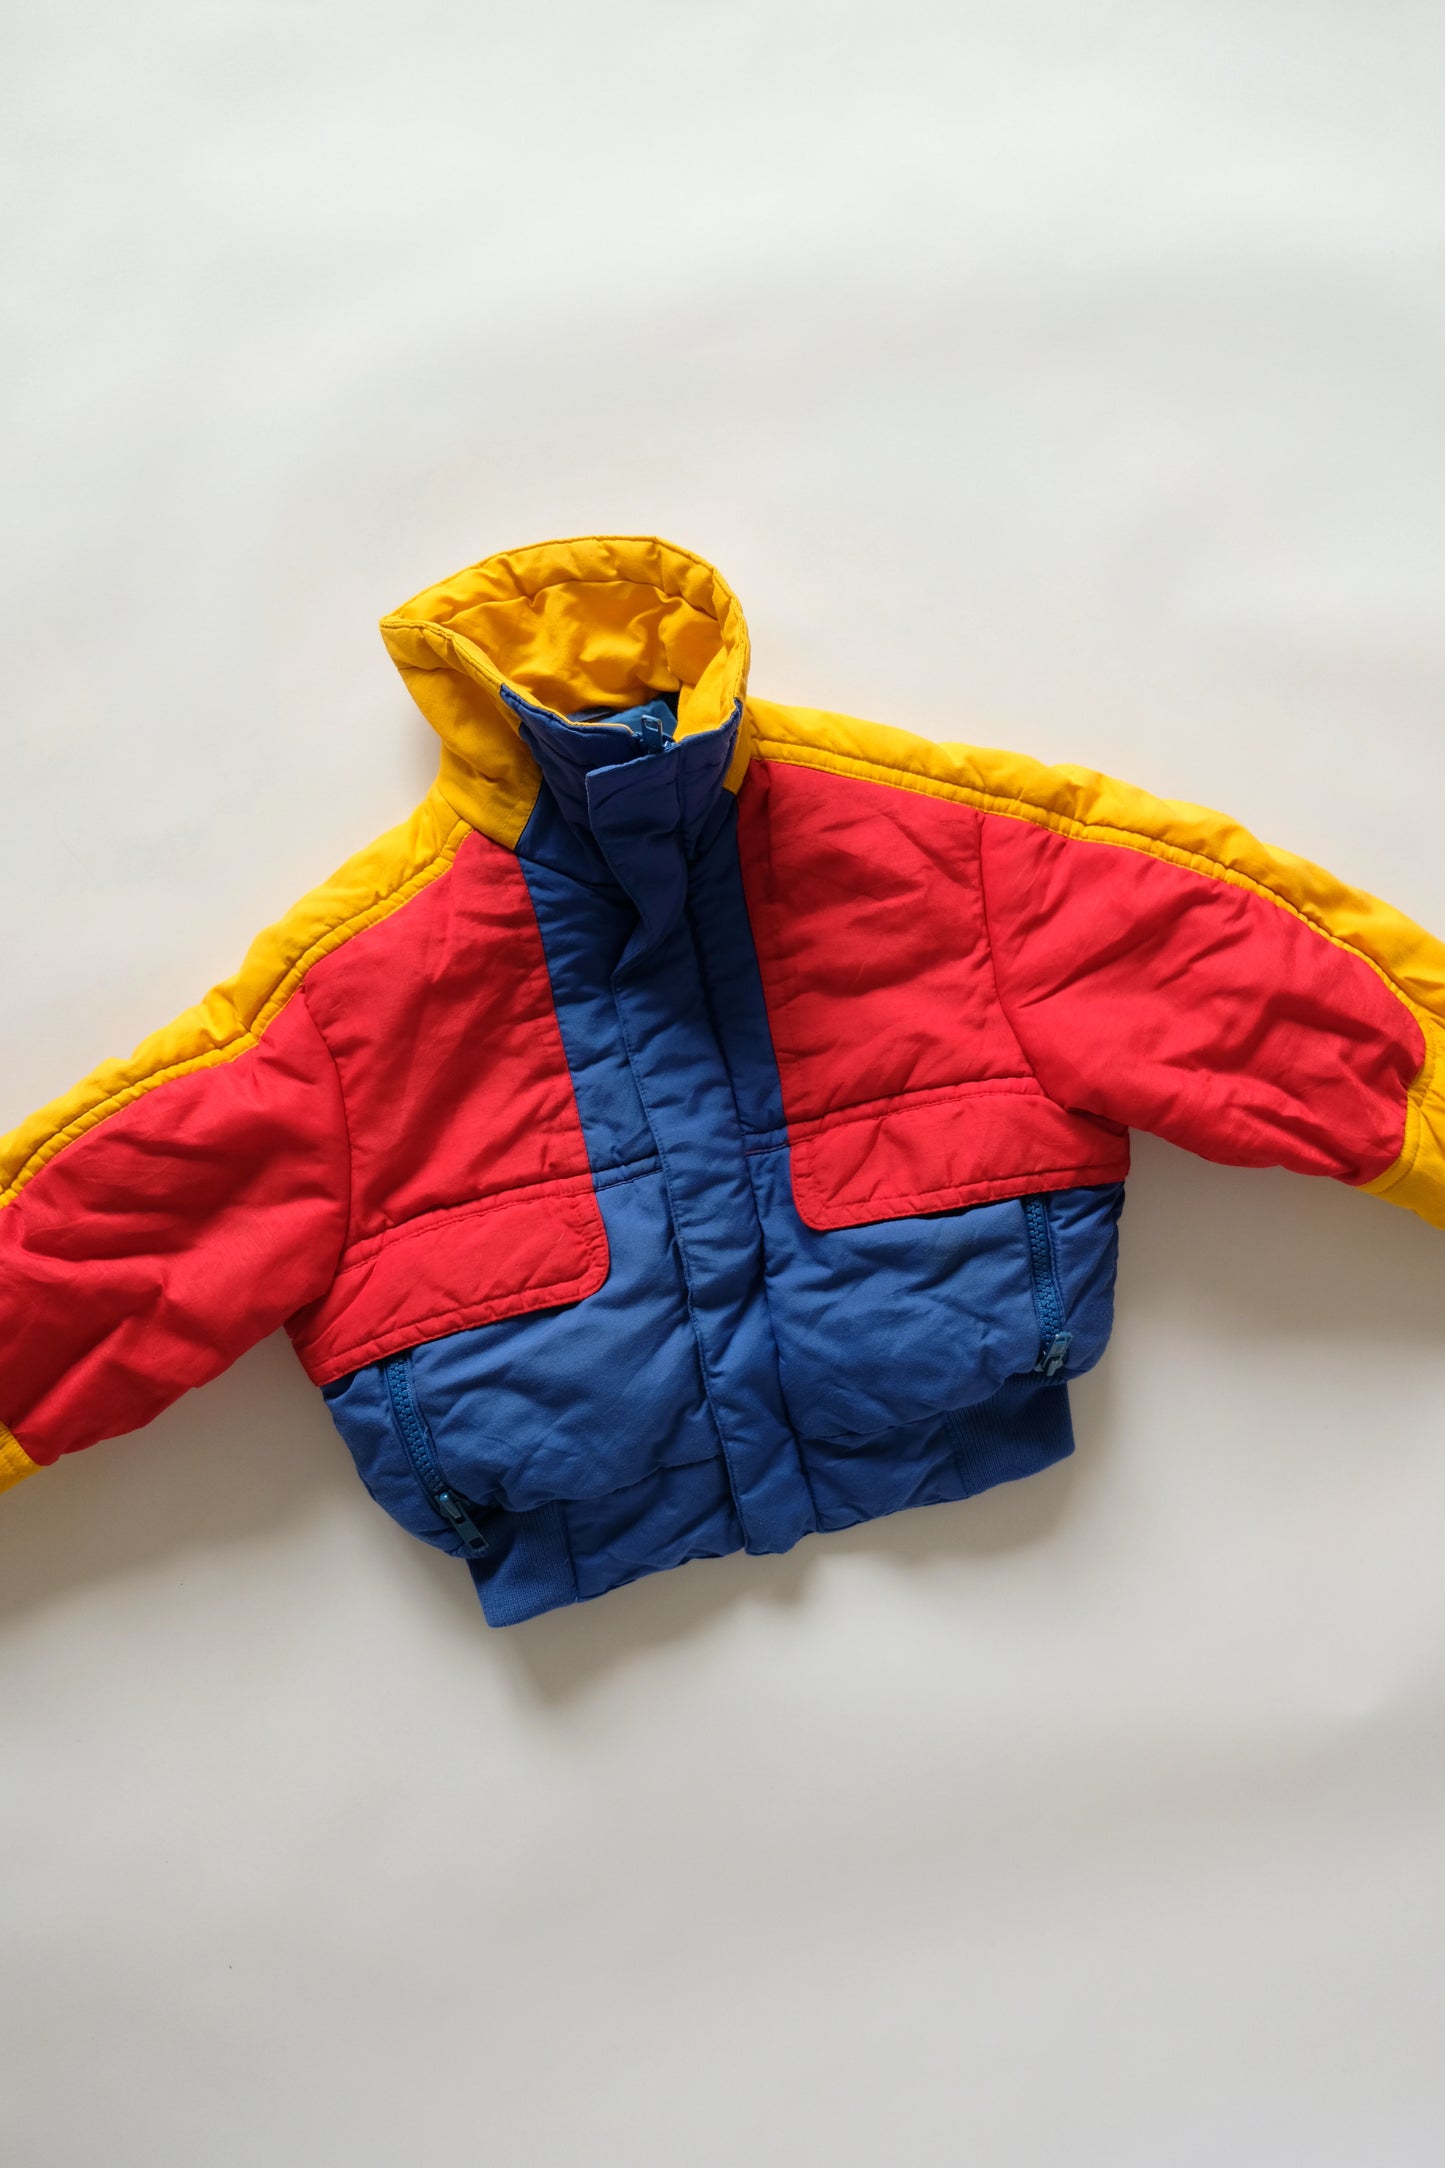 Vintage colour block jacket 4T